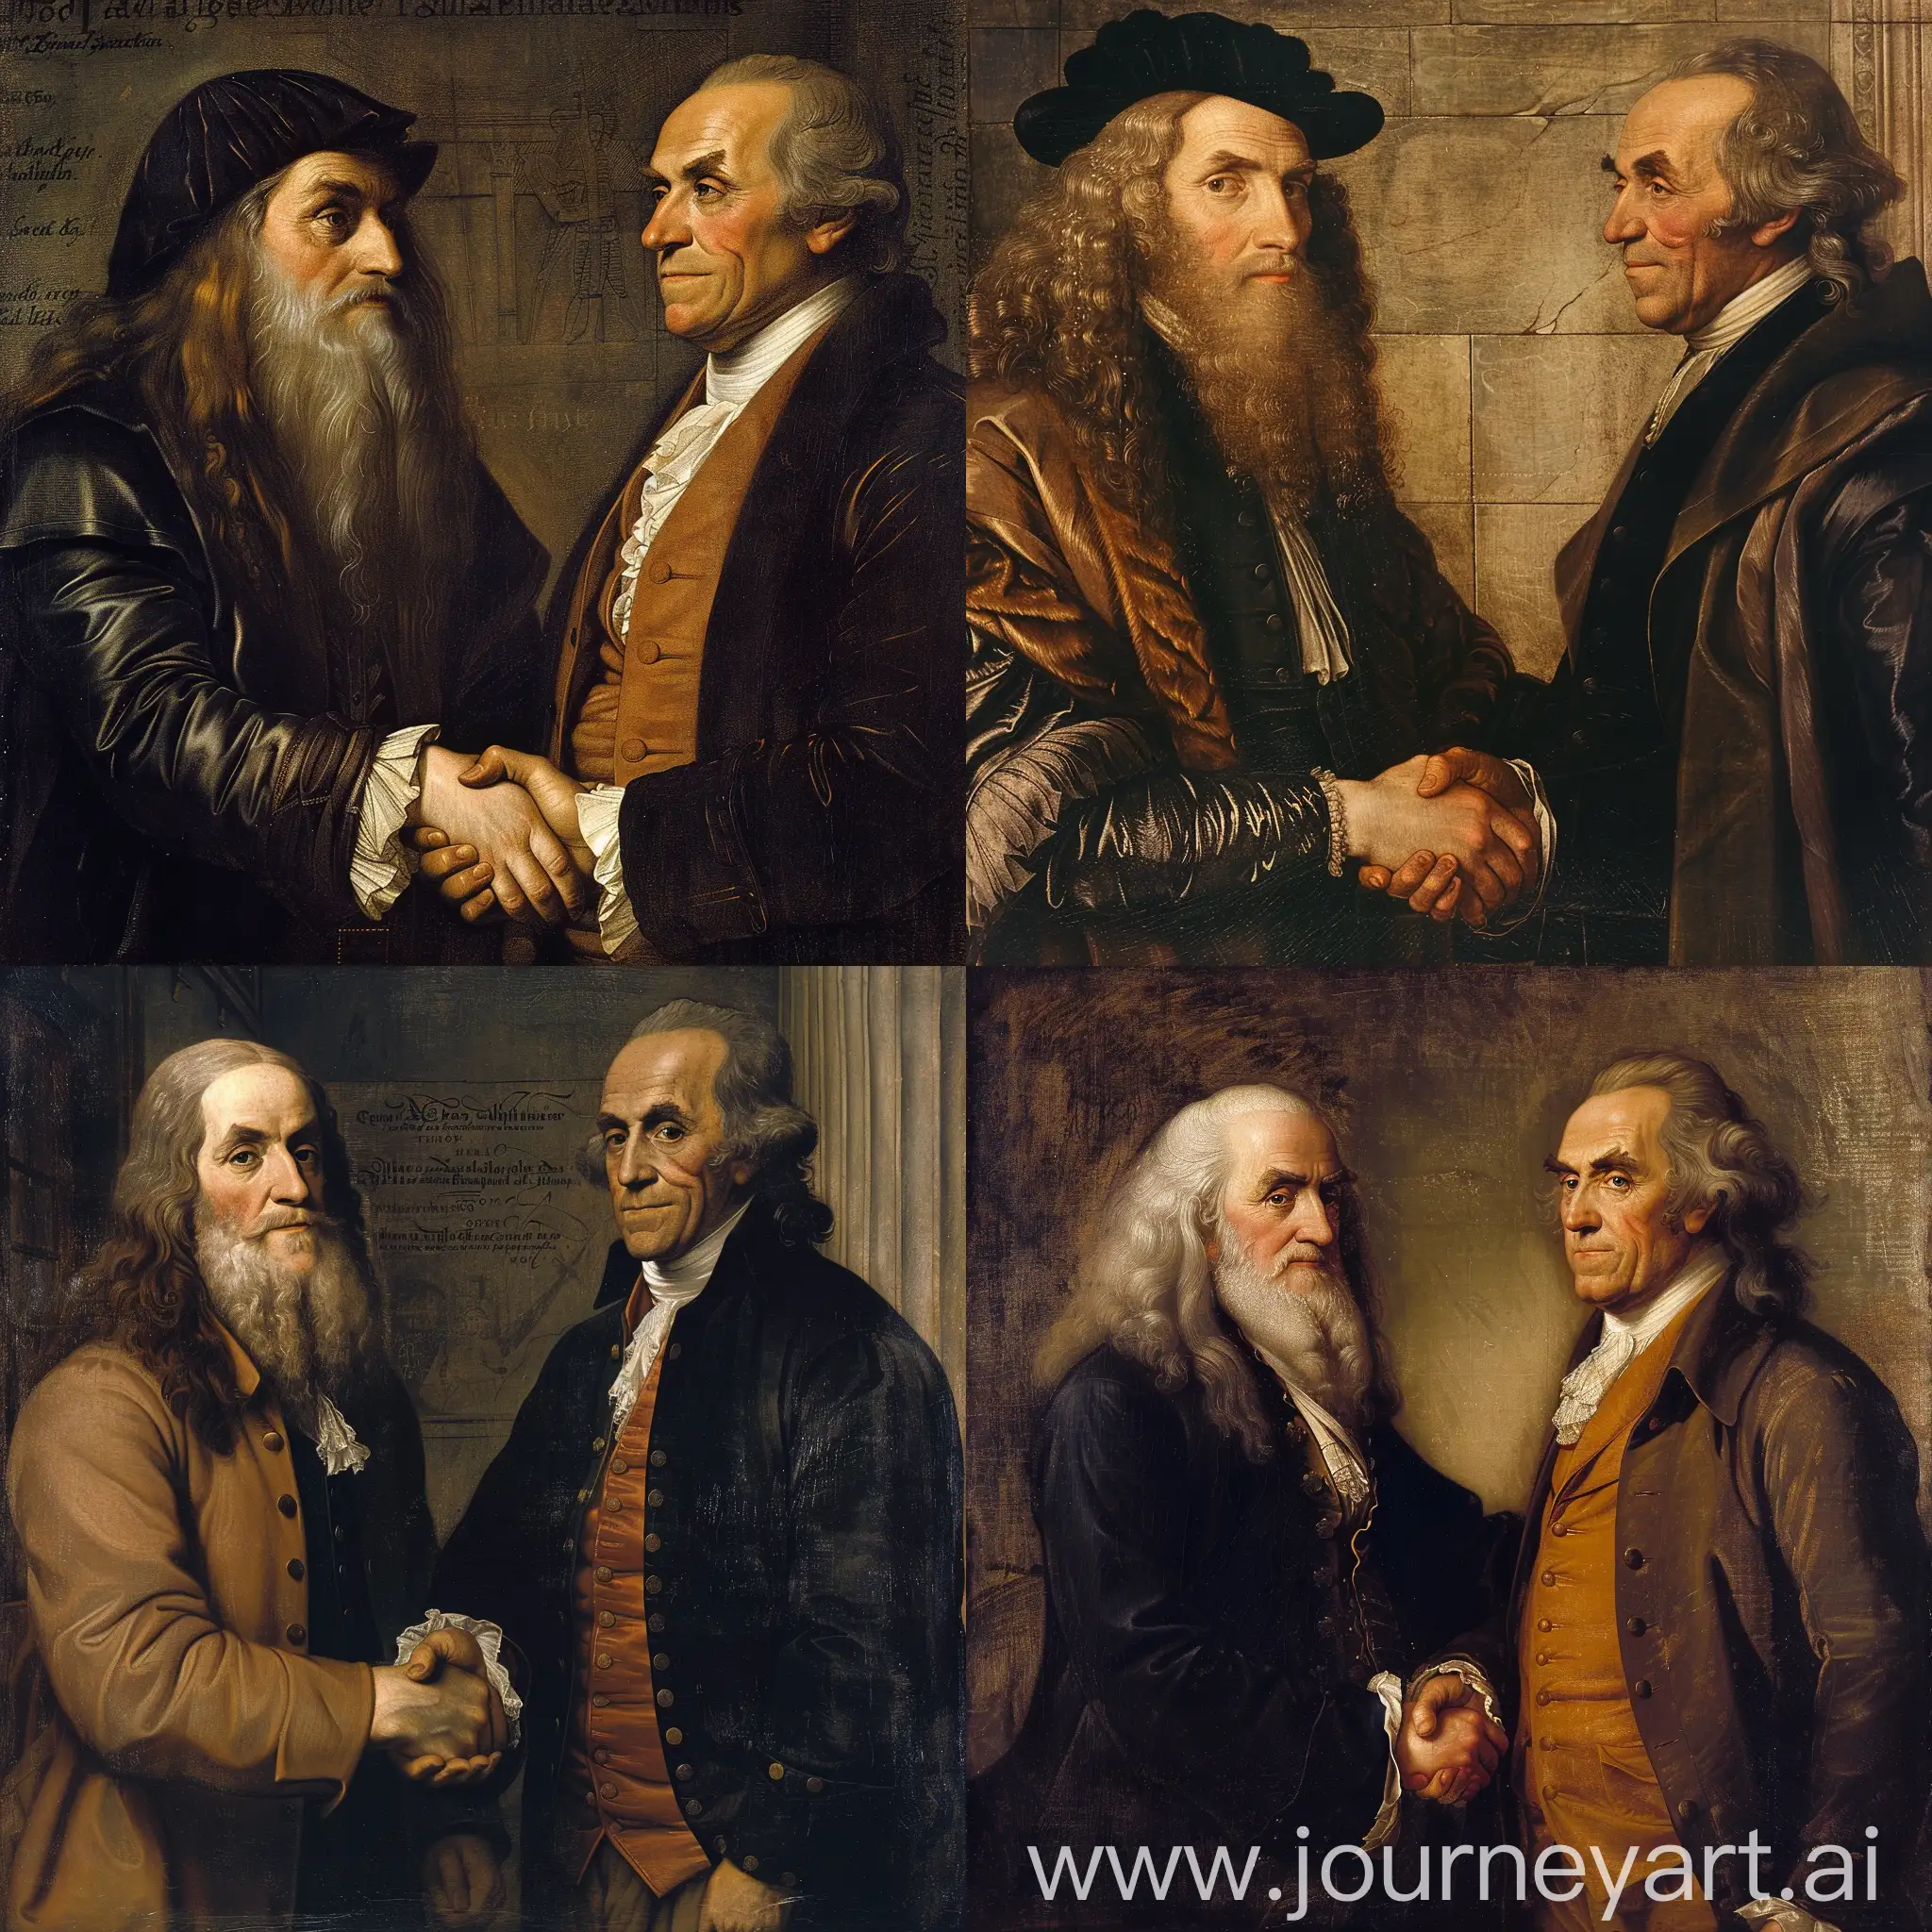 Leonardo da Vinci and Benjamin Franklin shake hands.